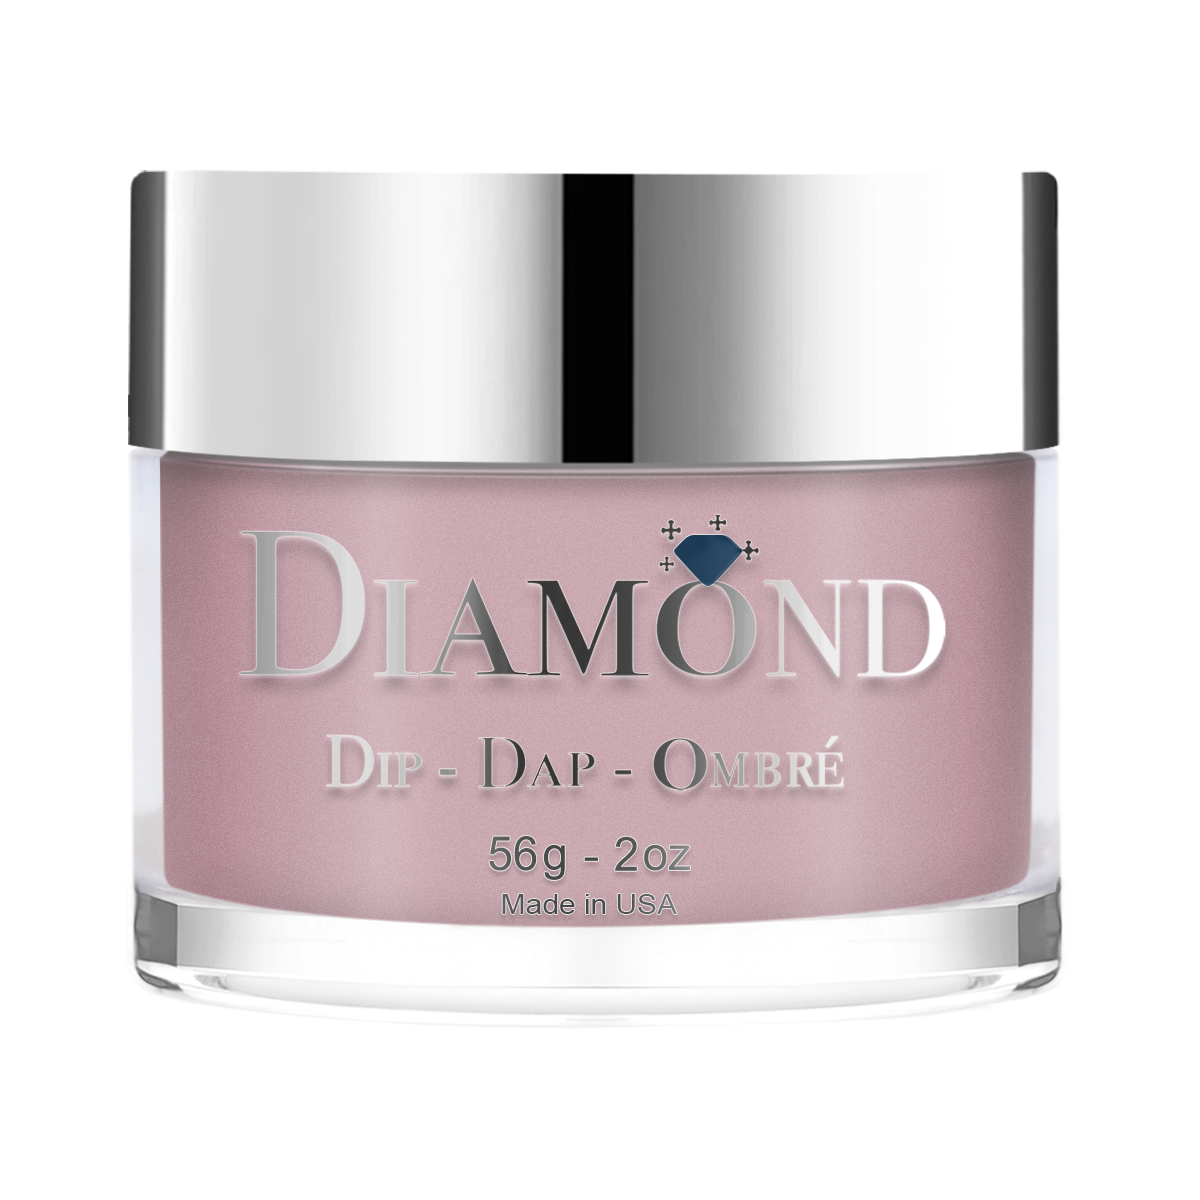 Diamond Dip & Dap Ombre Powder - 055